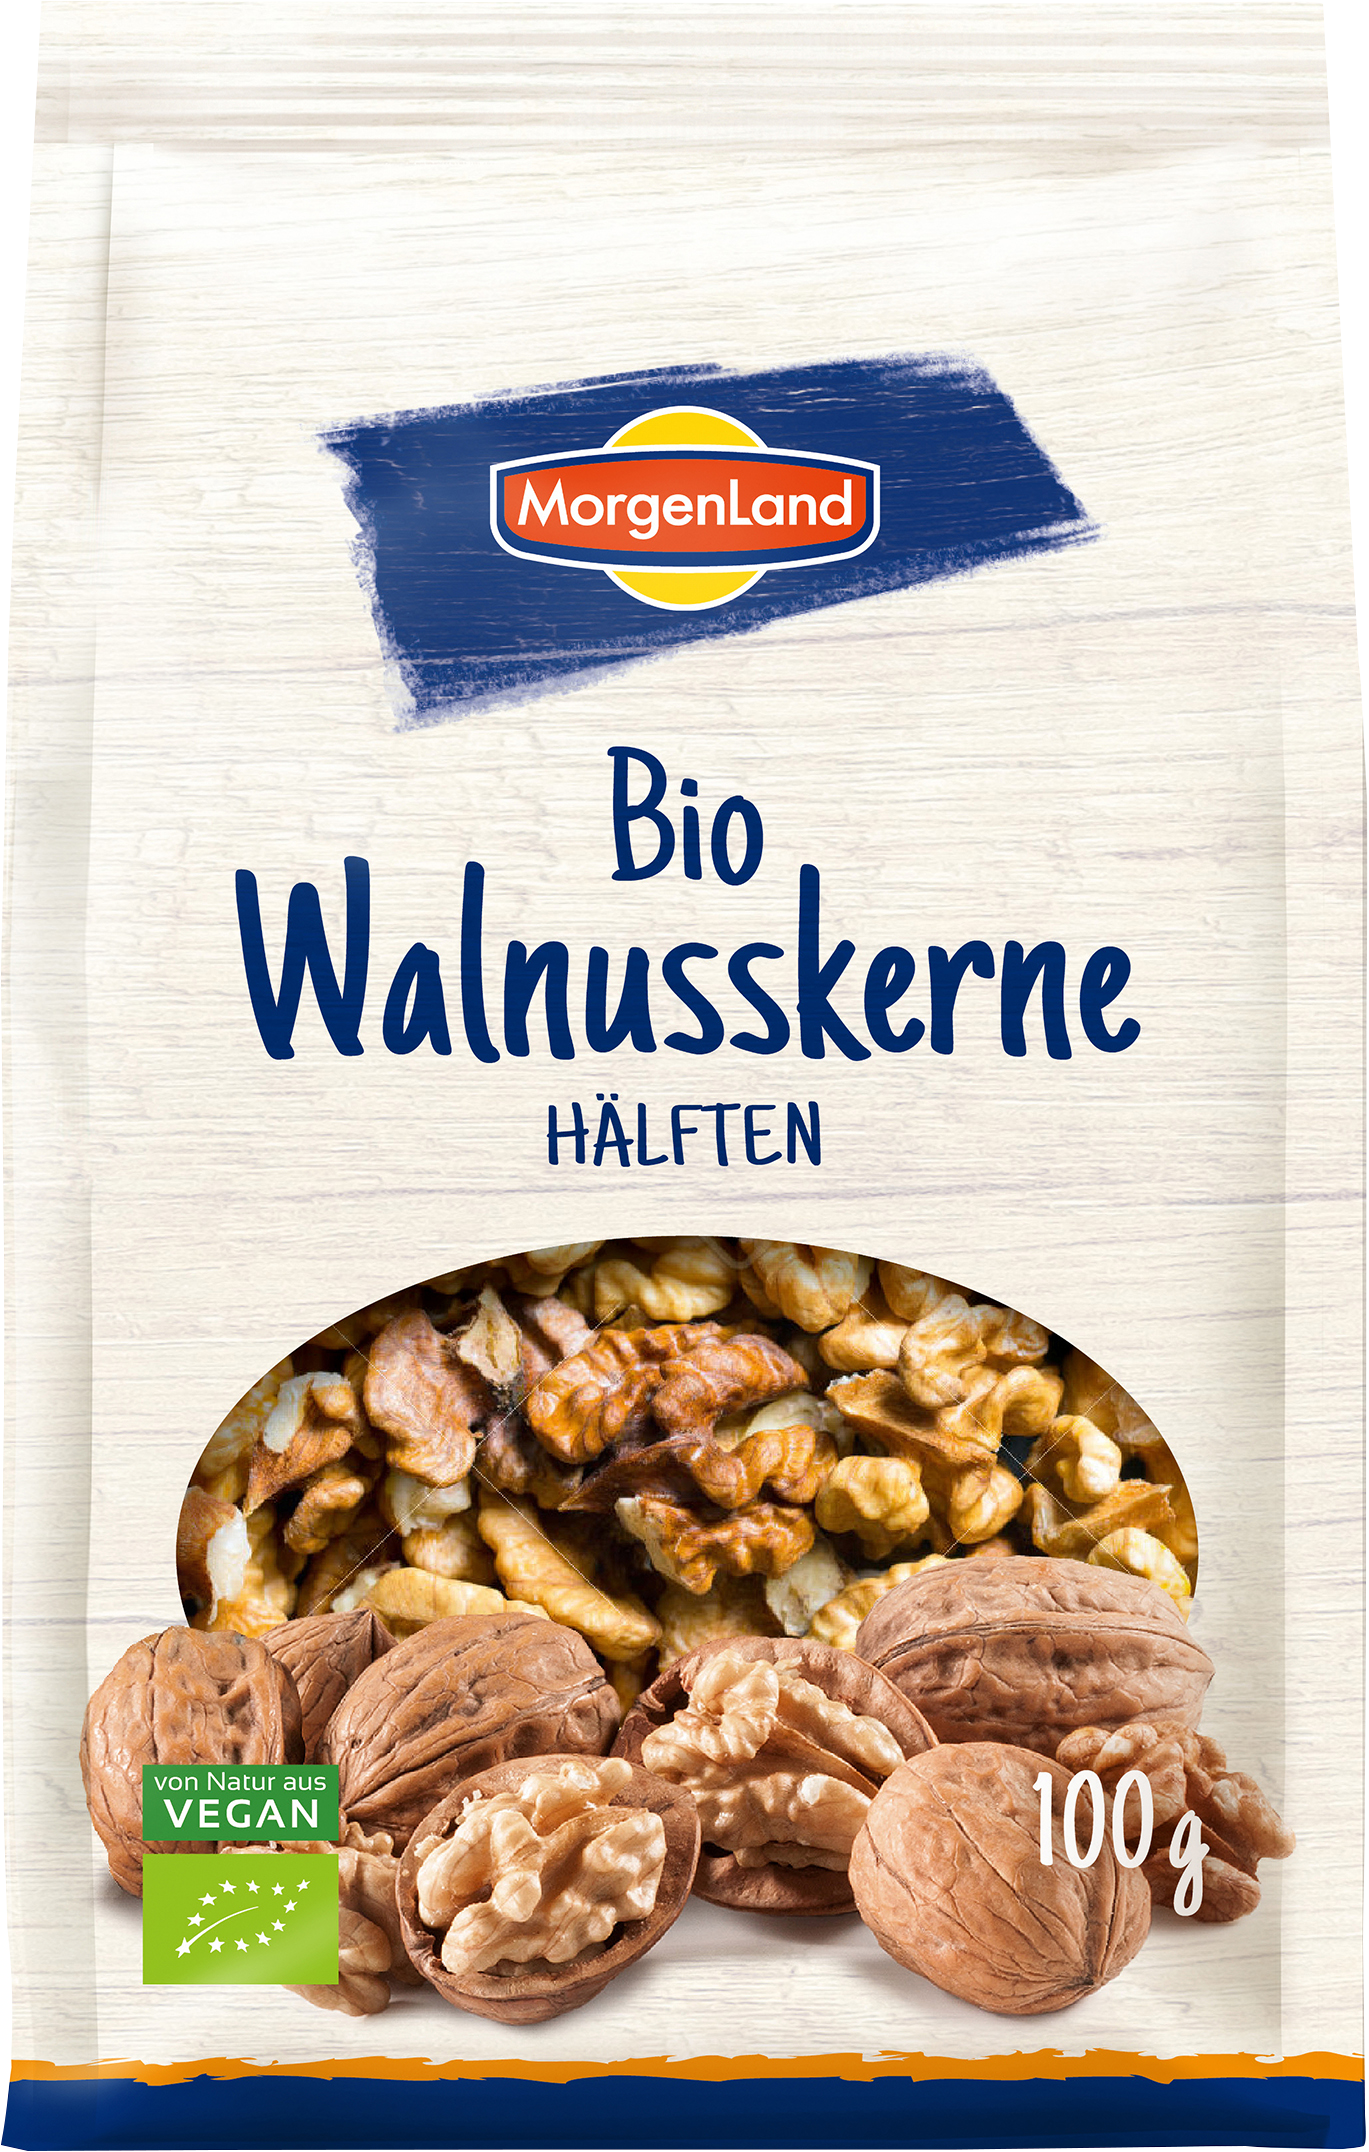 MorgenLand Walnusskerne Hälften 100g/nl